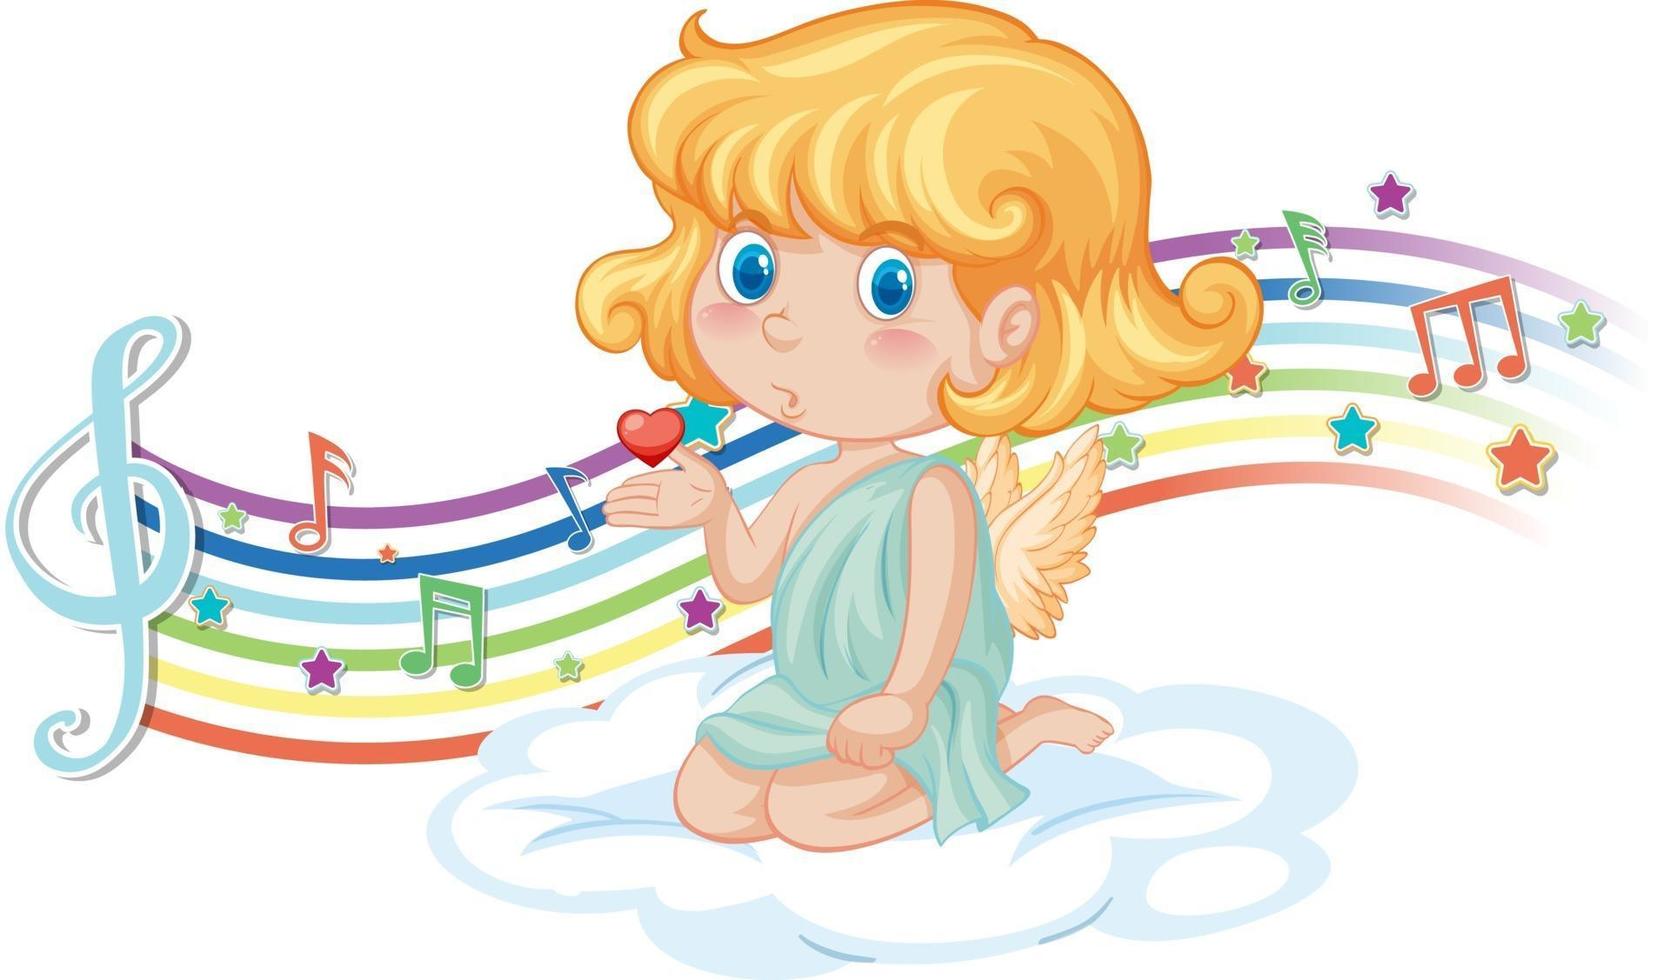 personaggio della ragazza cupido sulla nuvola con simboli di melodia sull'arcobaleno vettore